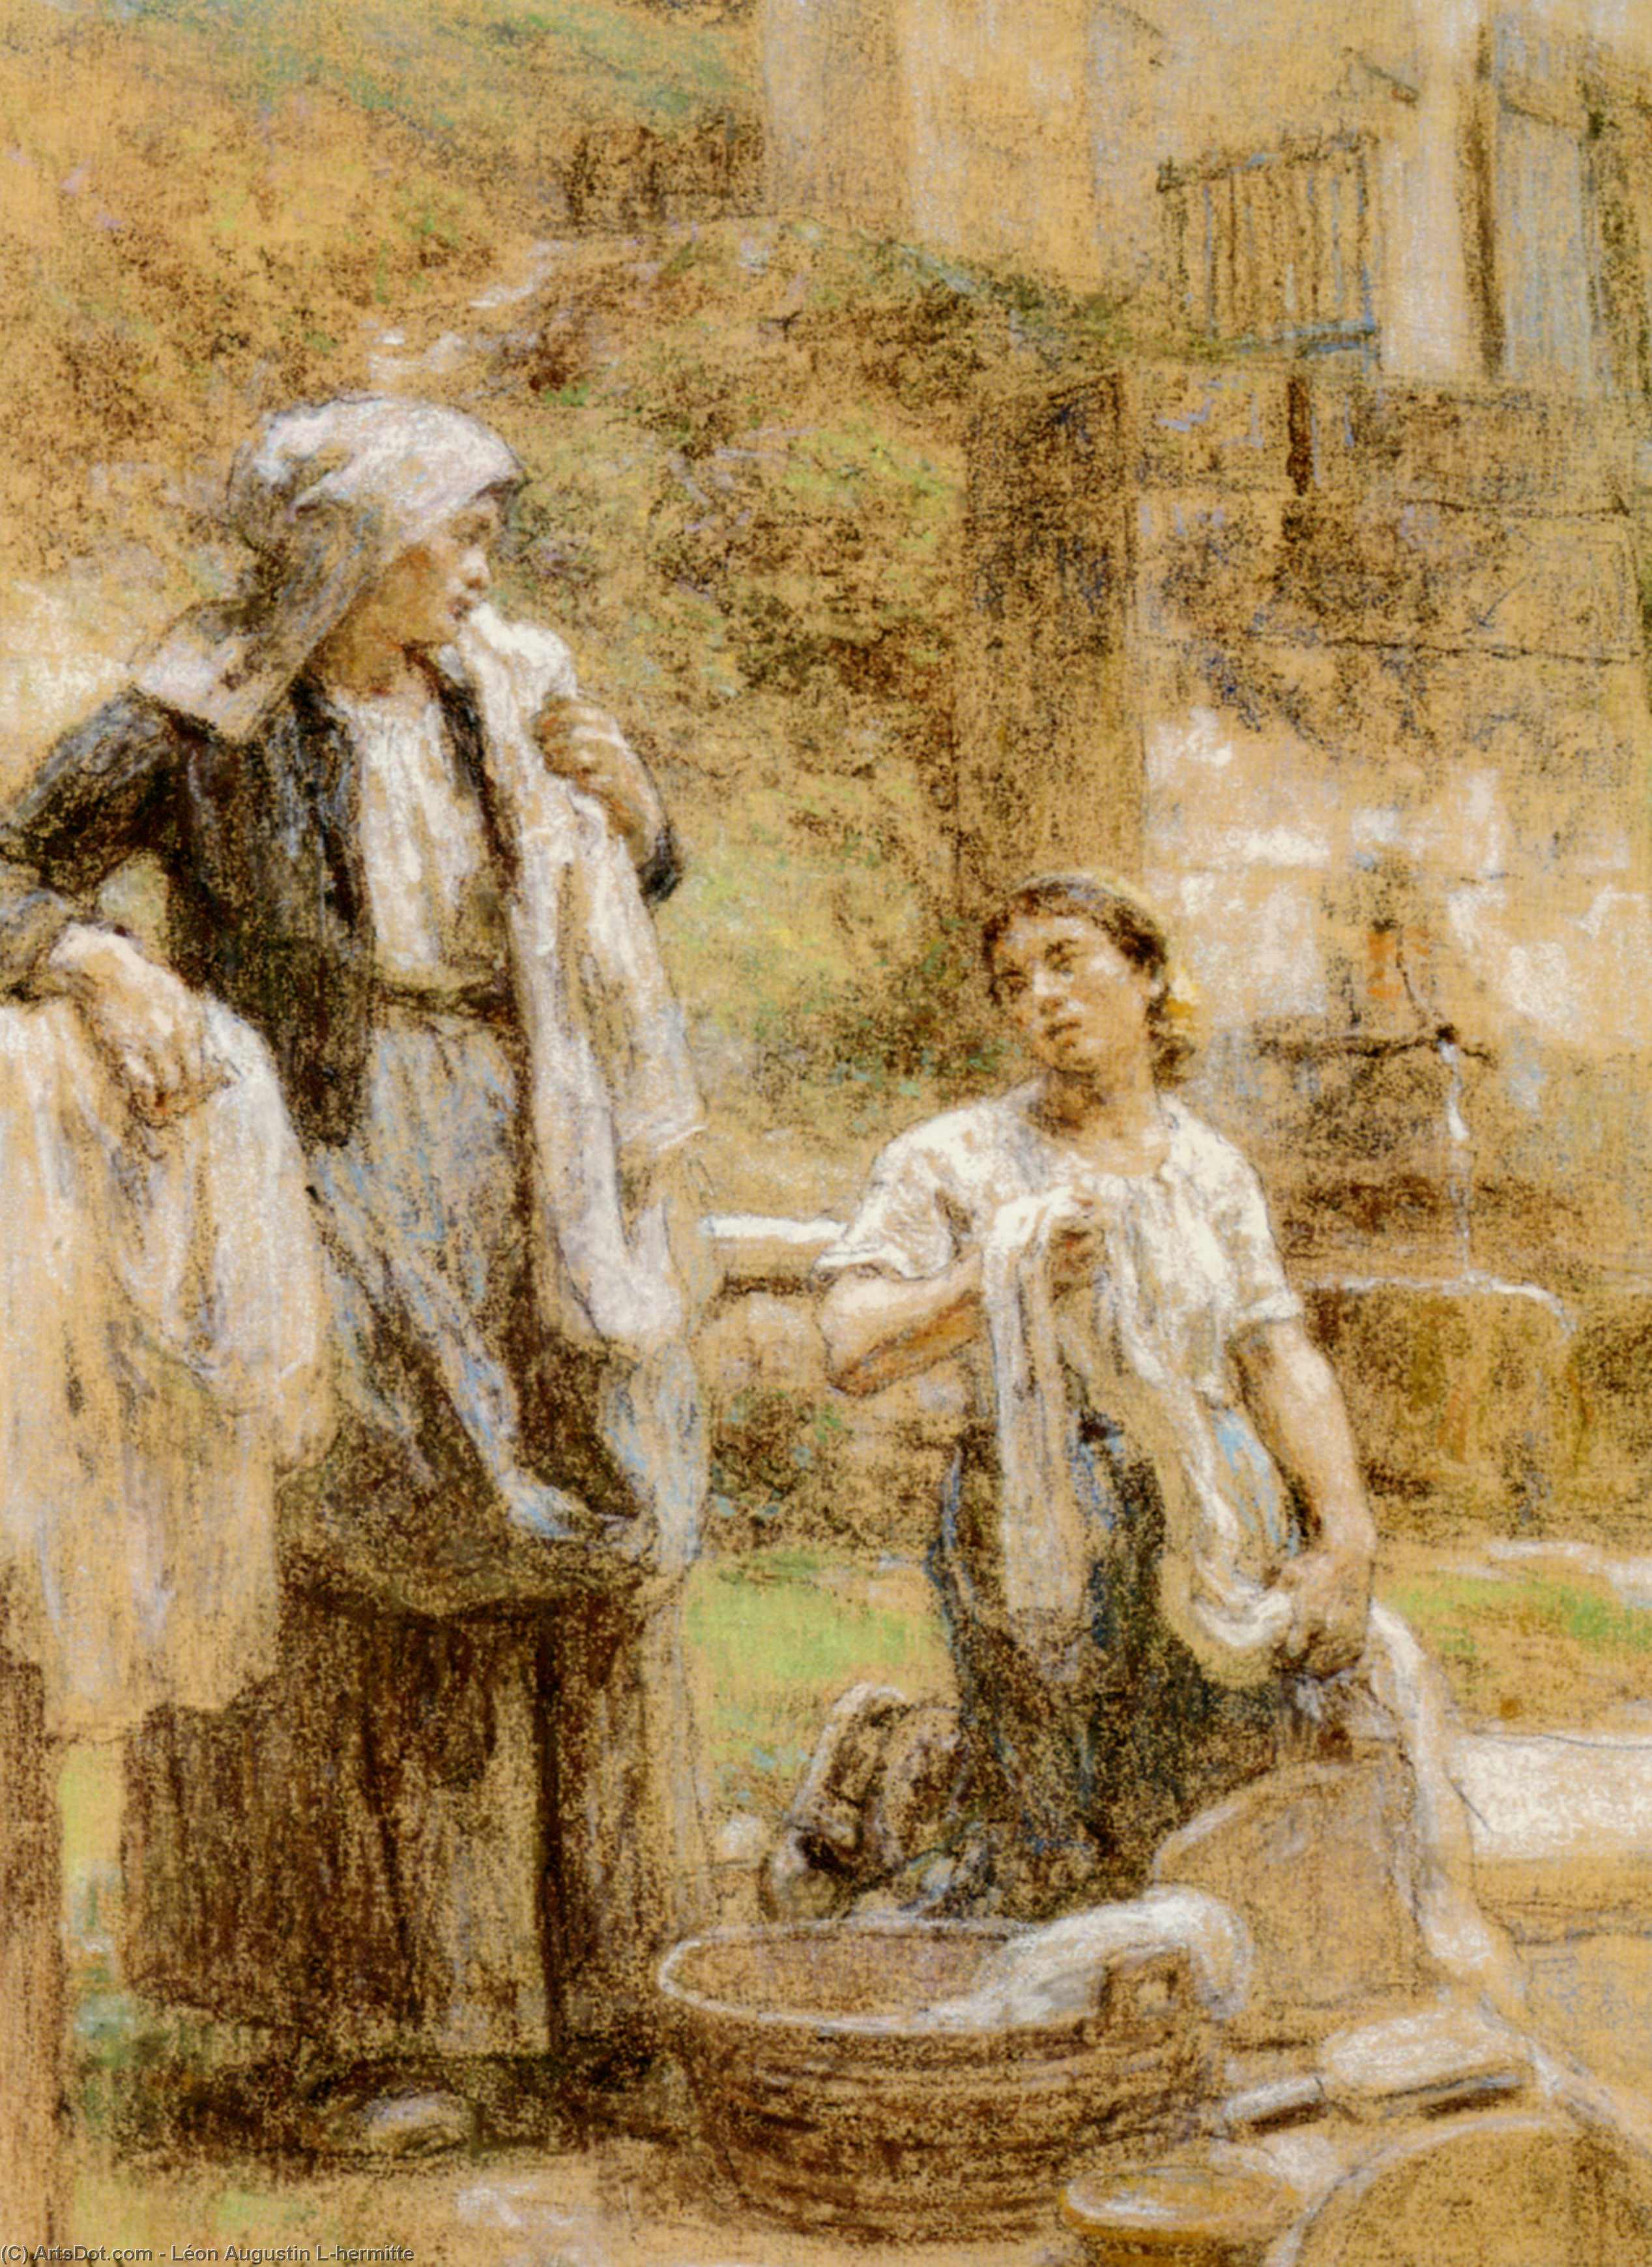 Wikioo.org - สารานุกรมวิจิตรศิลป์ - จิตรกรรม Léon Augustin L'hermitte - The Washerwomen